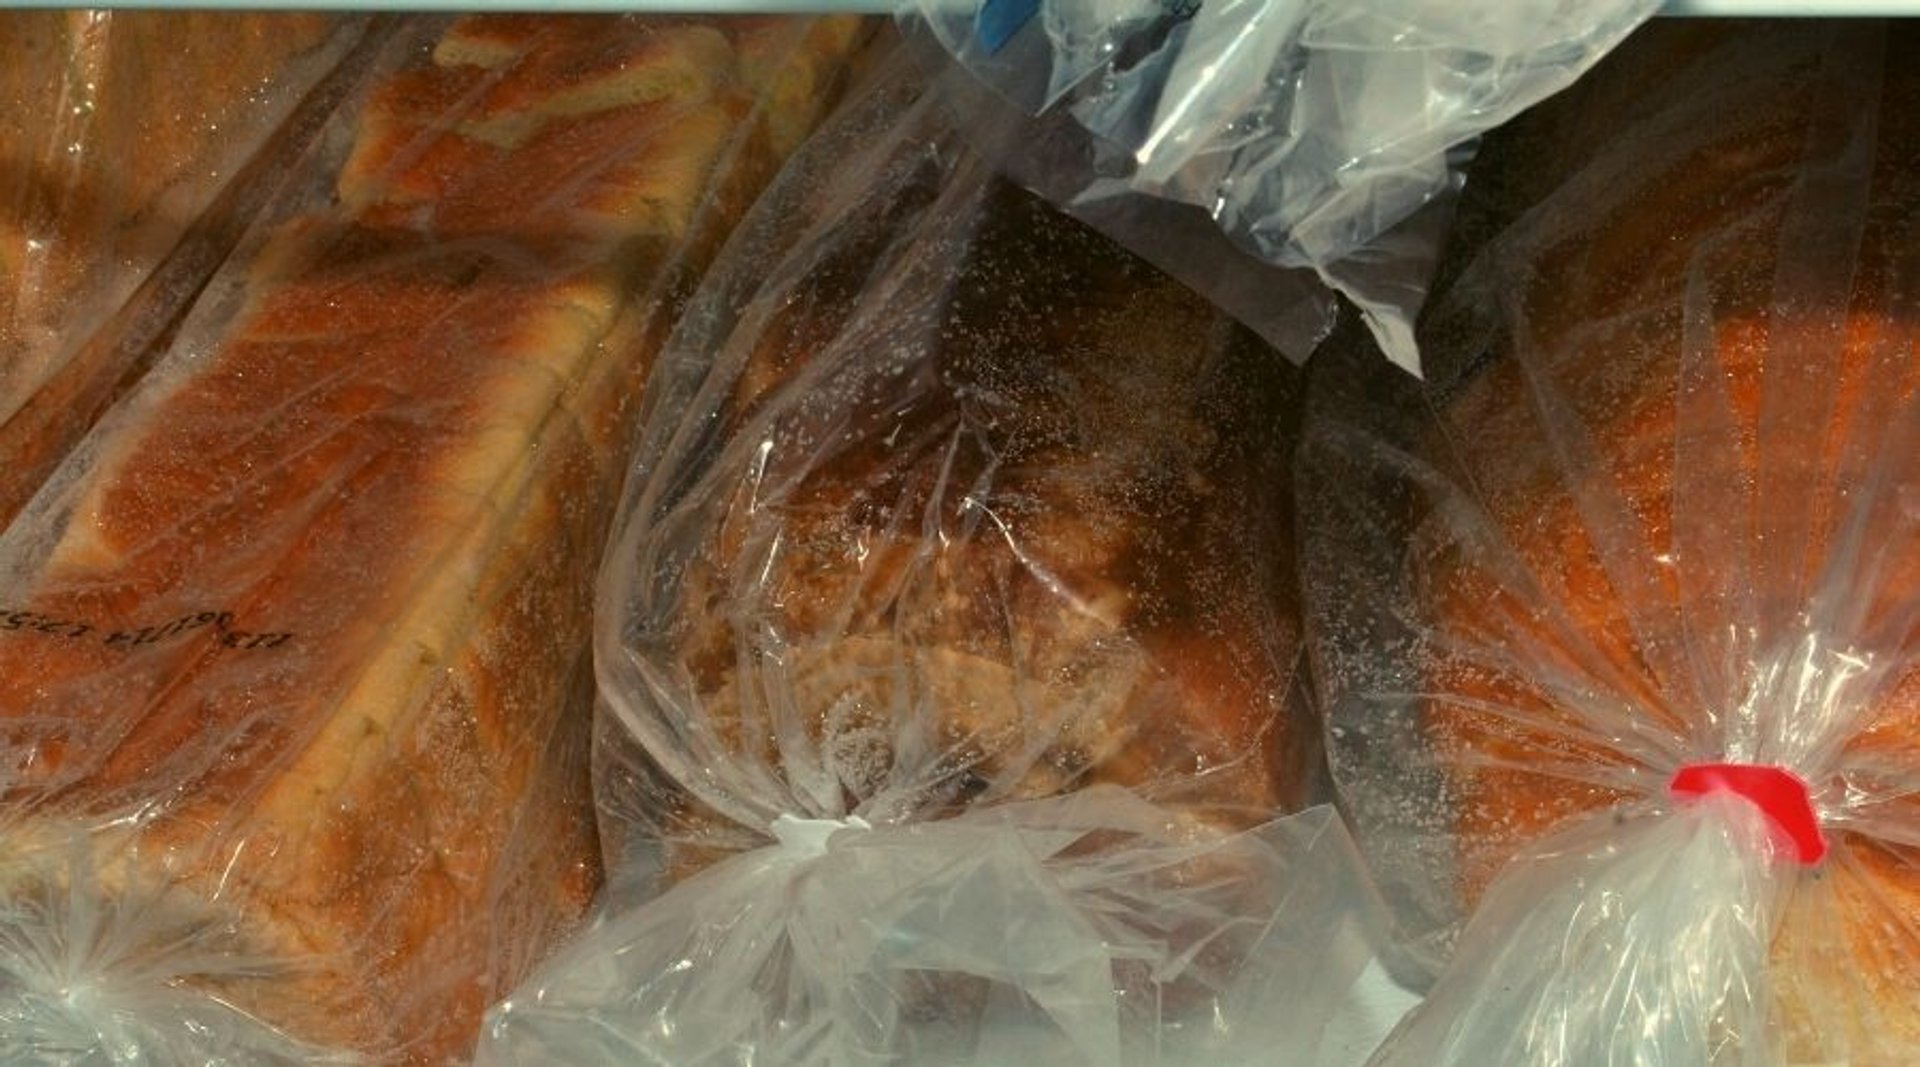 Jak poprawnie mrozić chleb?